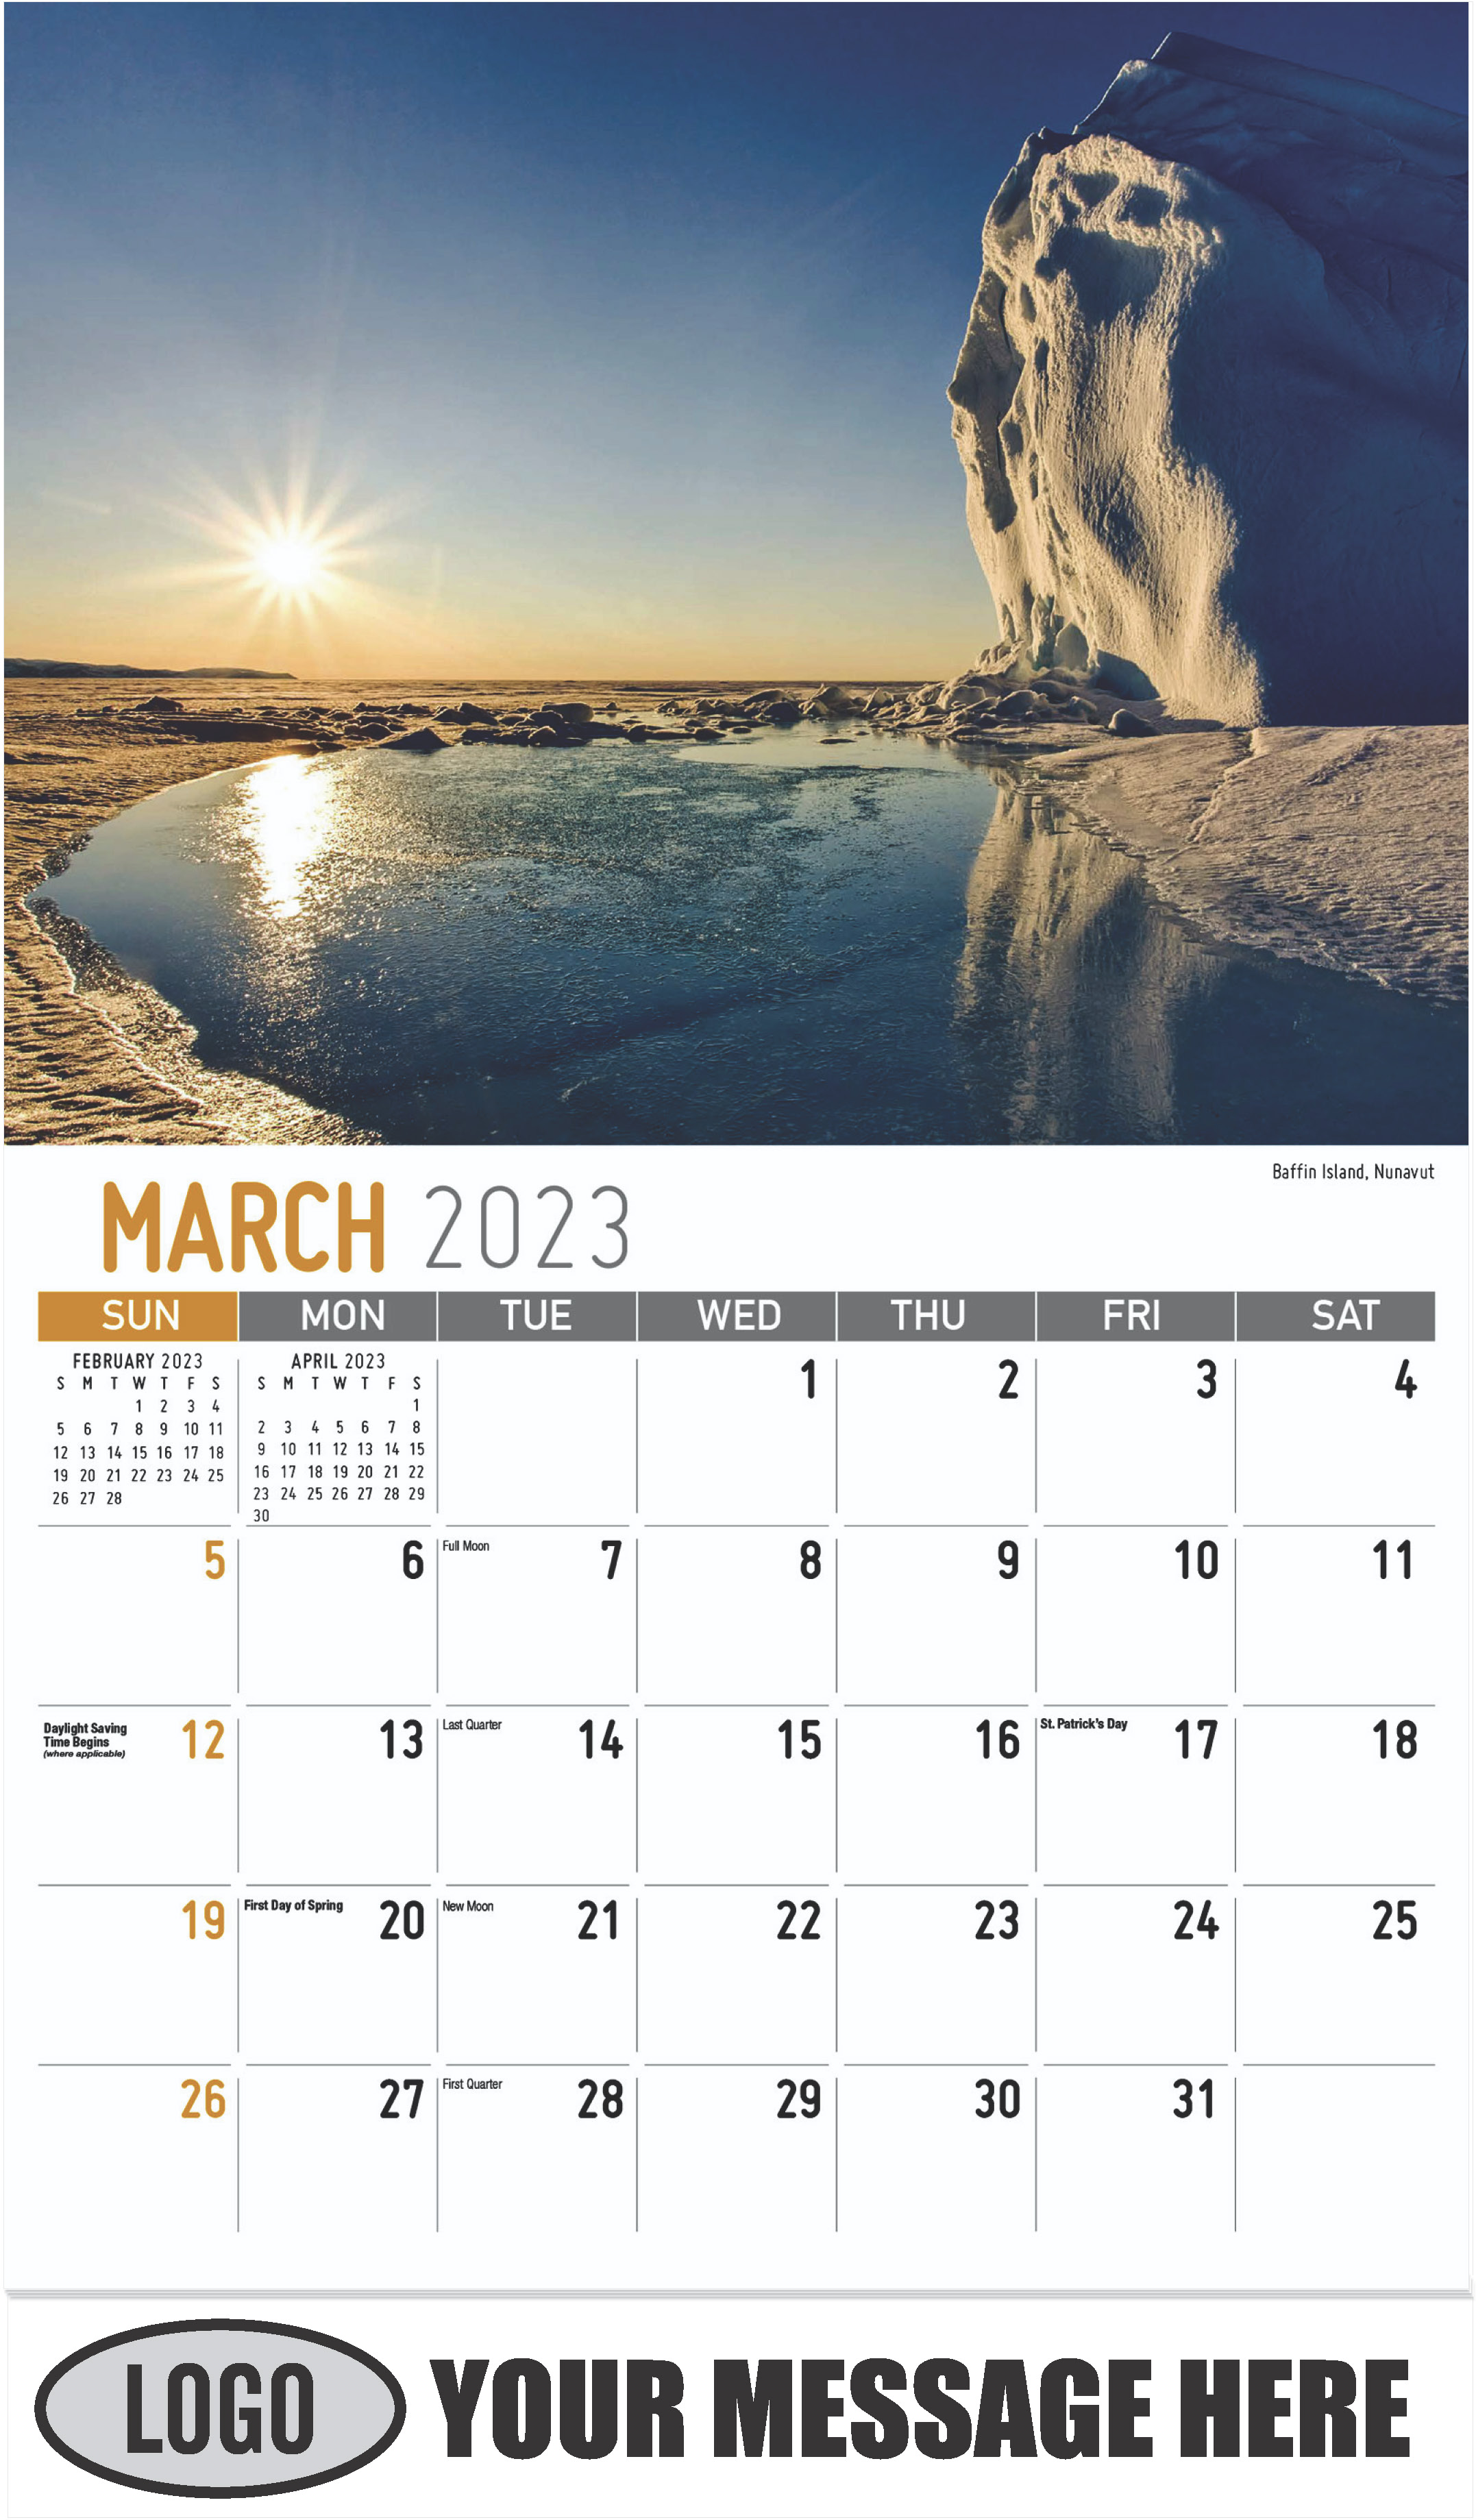 Baffin Island, Nunavut - March - Scenes of Western Canada 2023 Promotional Calendar